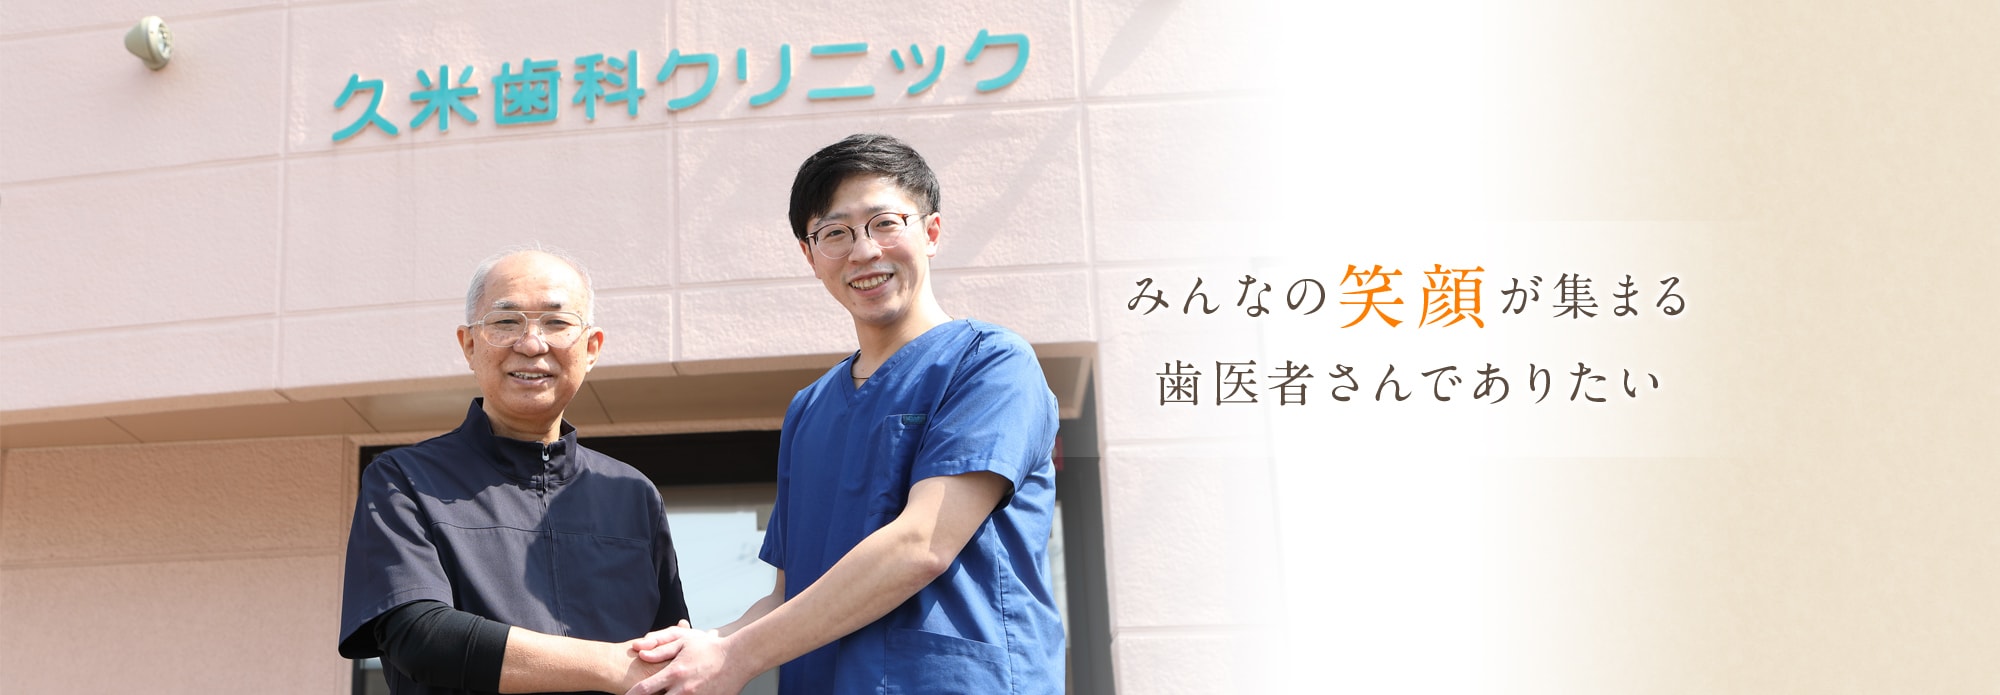 岸和田でみんなの笑顔が集まる歯医者さんでありたい